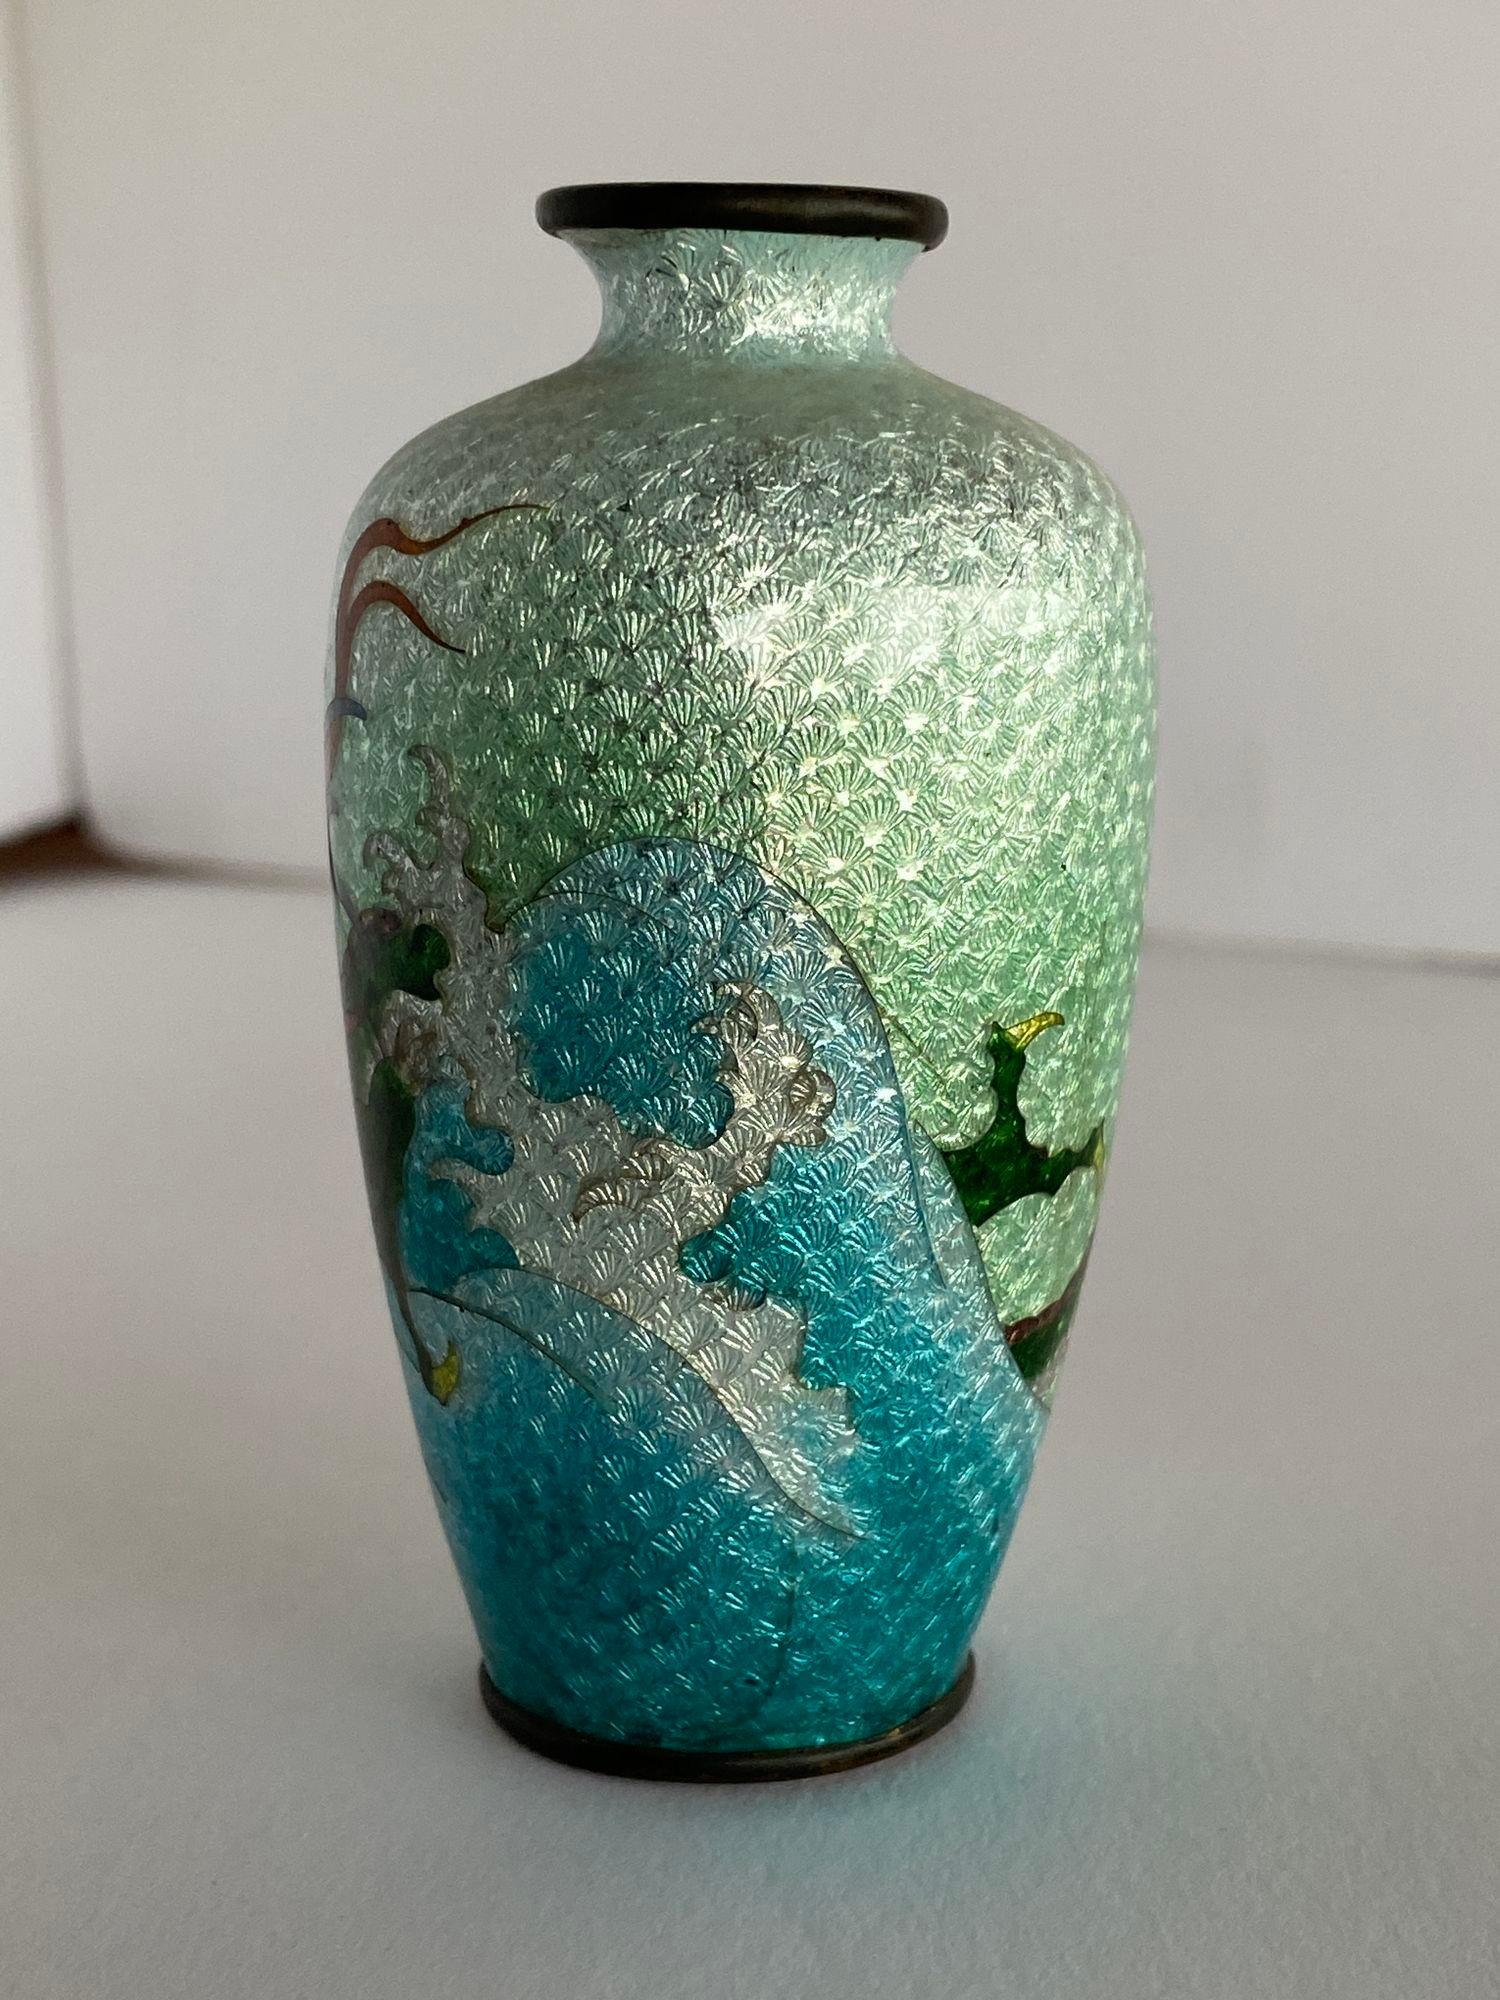 Japanische Drachen-Cloisonné-Vase aus der Nachkriegszeit mit der Darstellung eines durch den Himmel fliegenden Drachens.
 
 
Crica 1900
Abmessungen sind 4,25